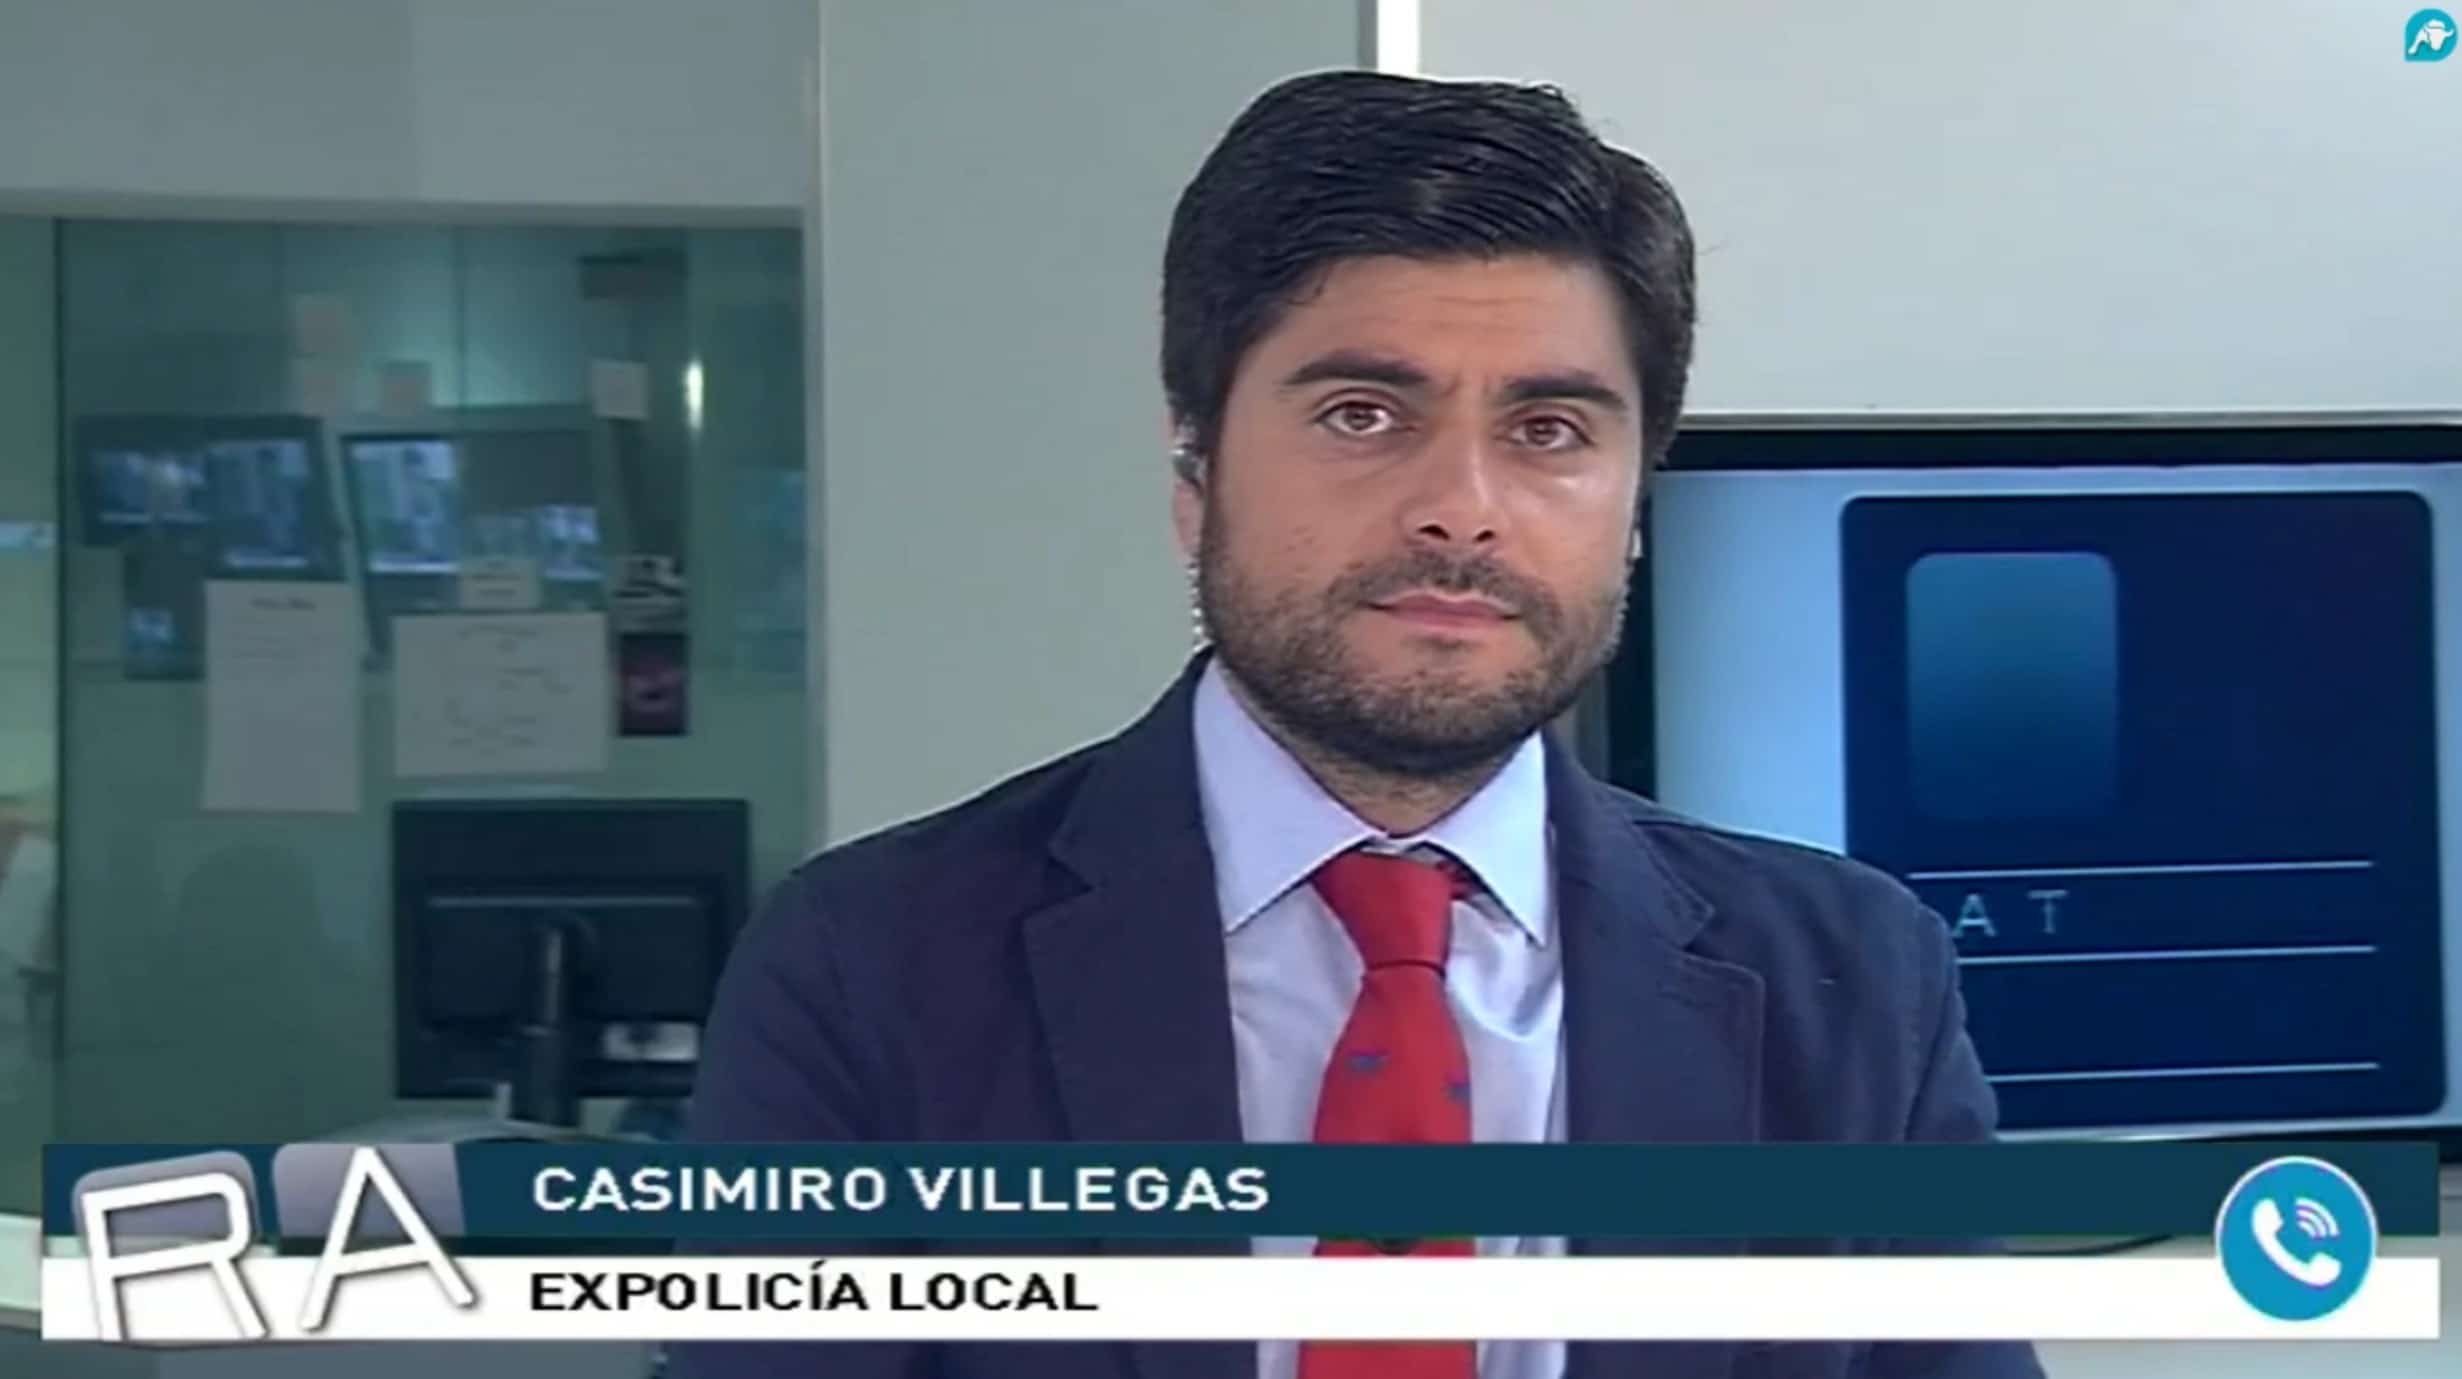 El expolicía Casimiro Villegas asegura que sufrió un ataque paramilitar en su propia casa